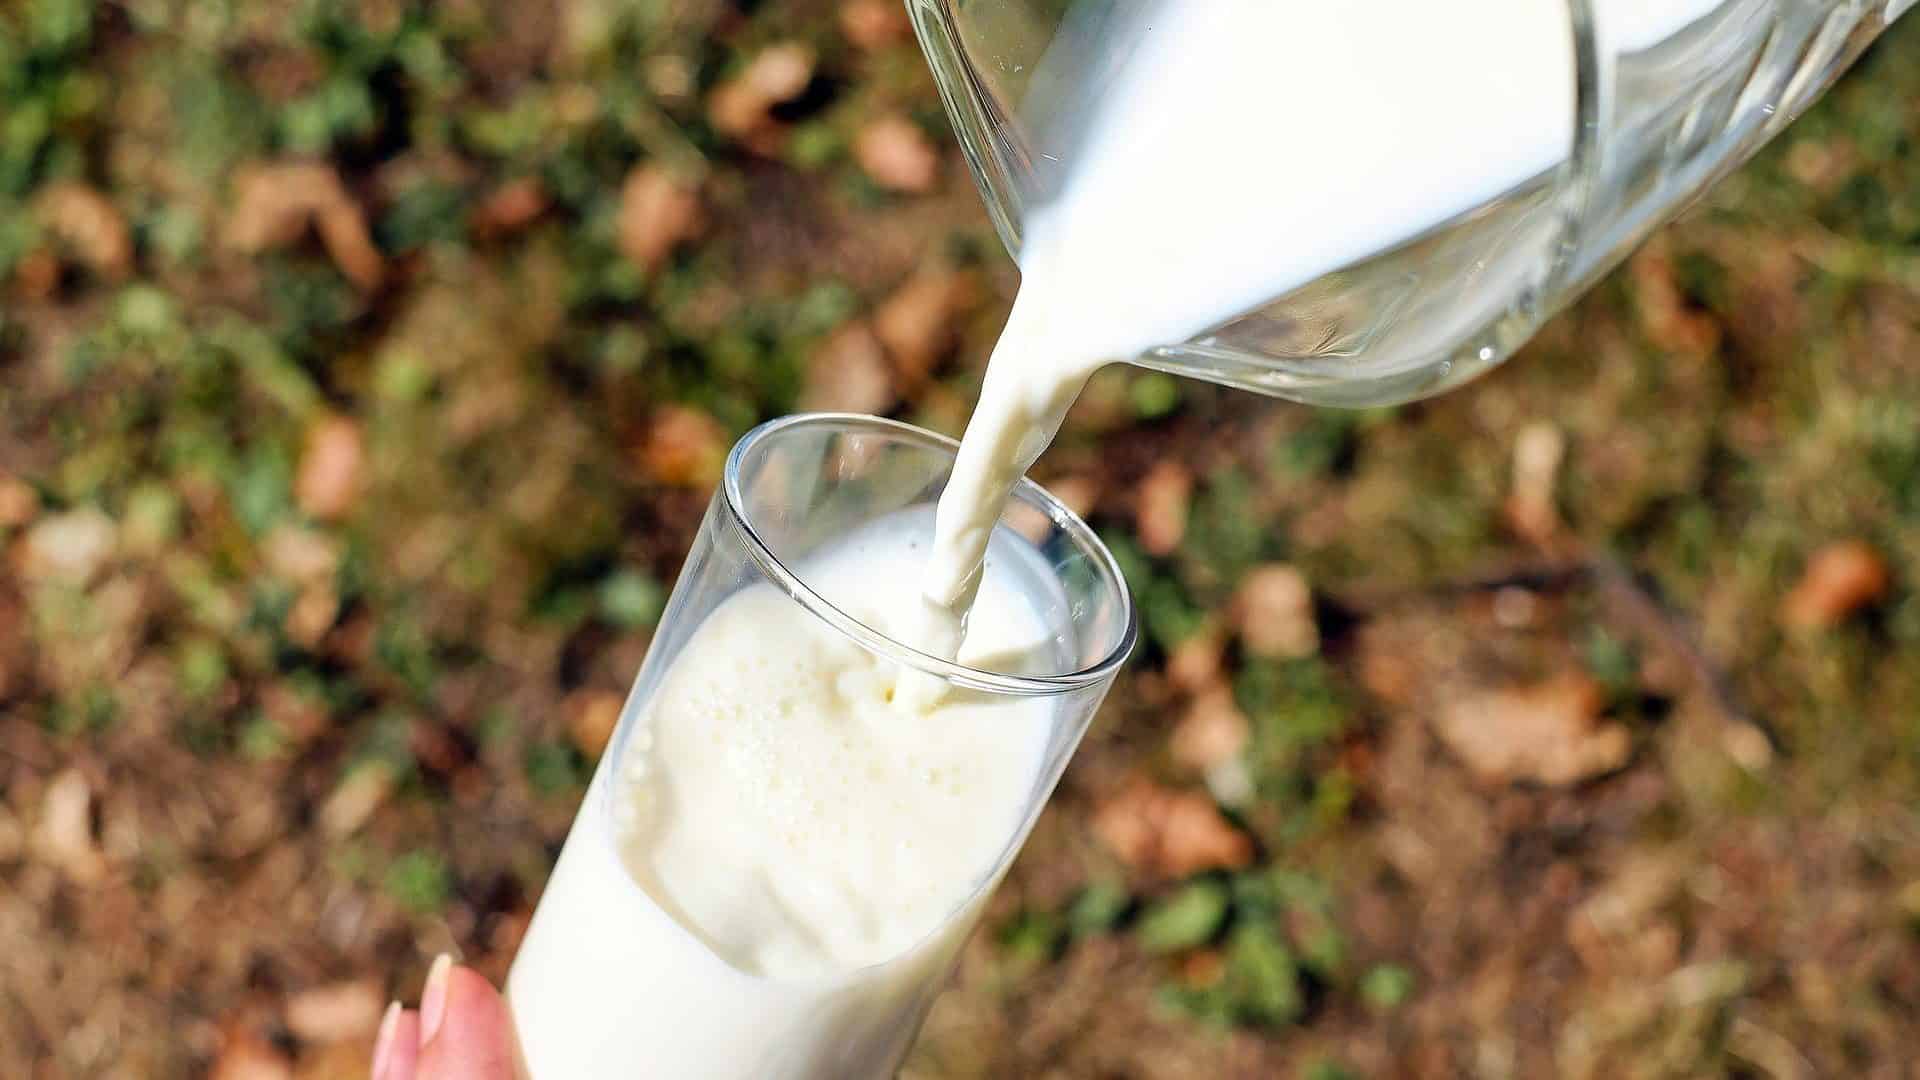 Melk wordt in een glas geschonken